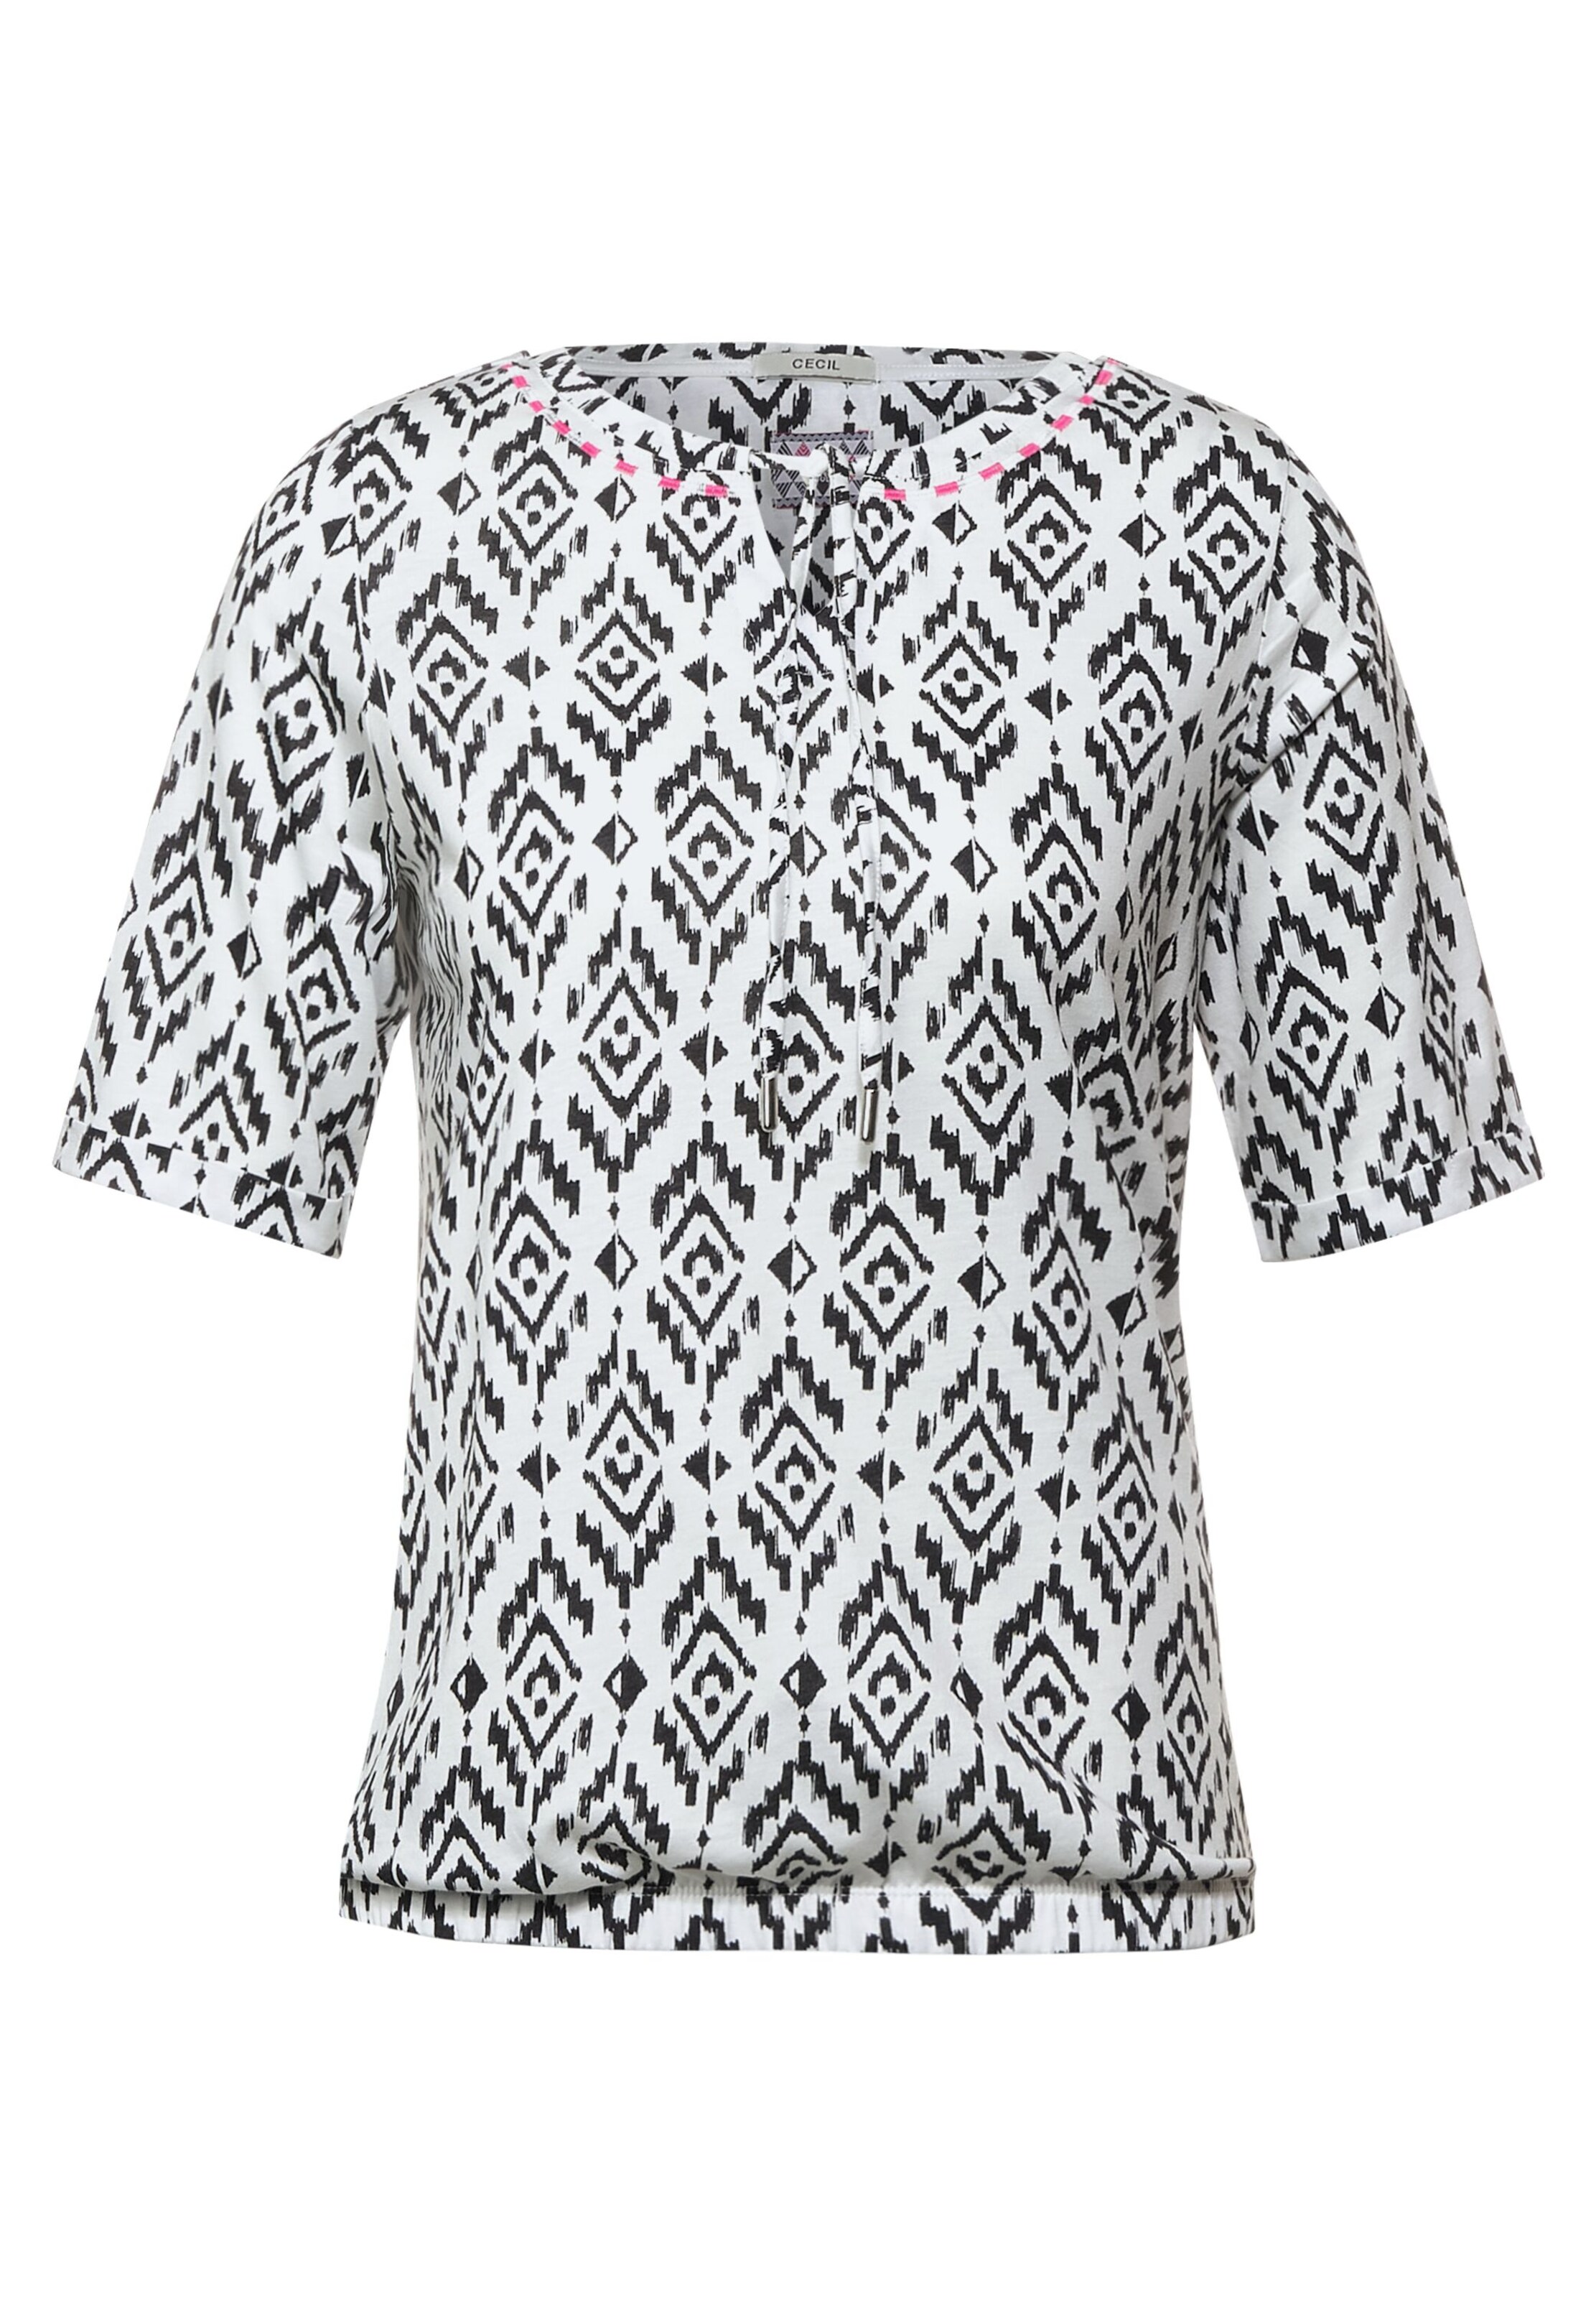 Frauen Shirts & Tops CECIL Shirt in Schwarz, Weiß - YM03041